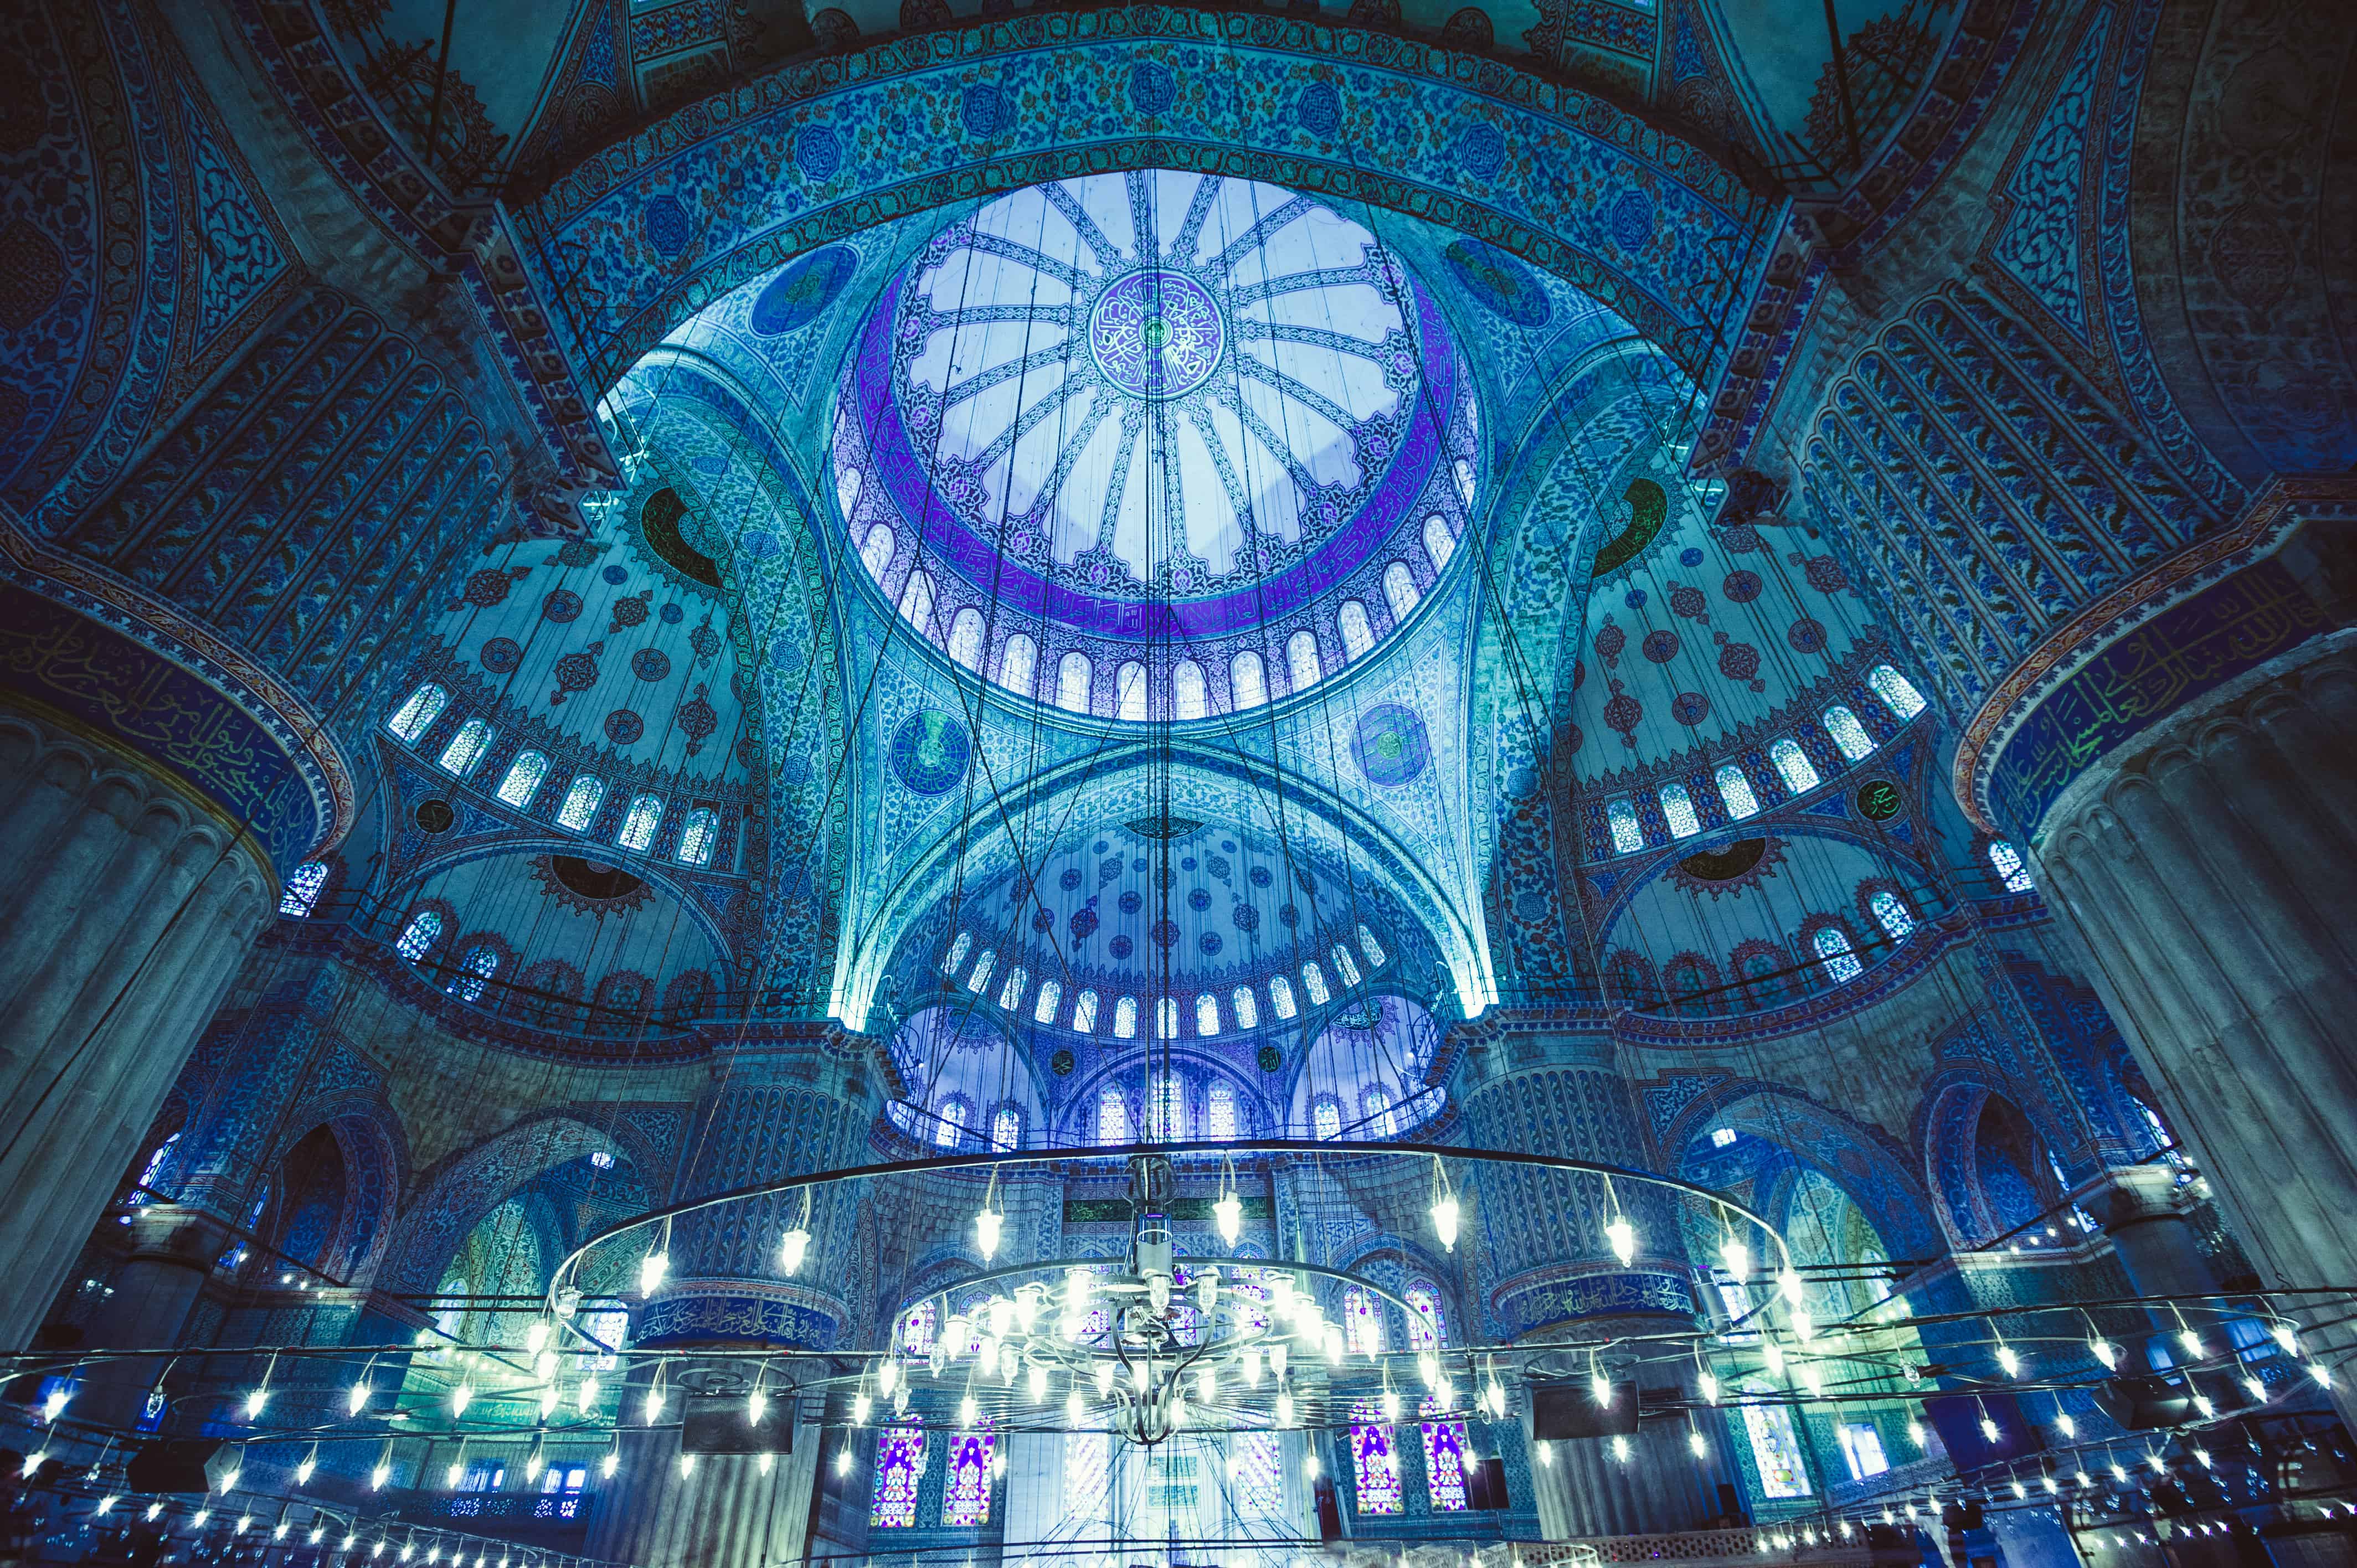 ตุรกี เมืองอีสตันบูล มัสยิดสีน้ำเงิน